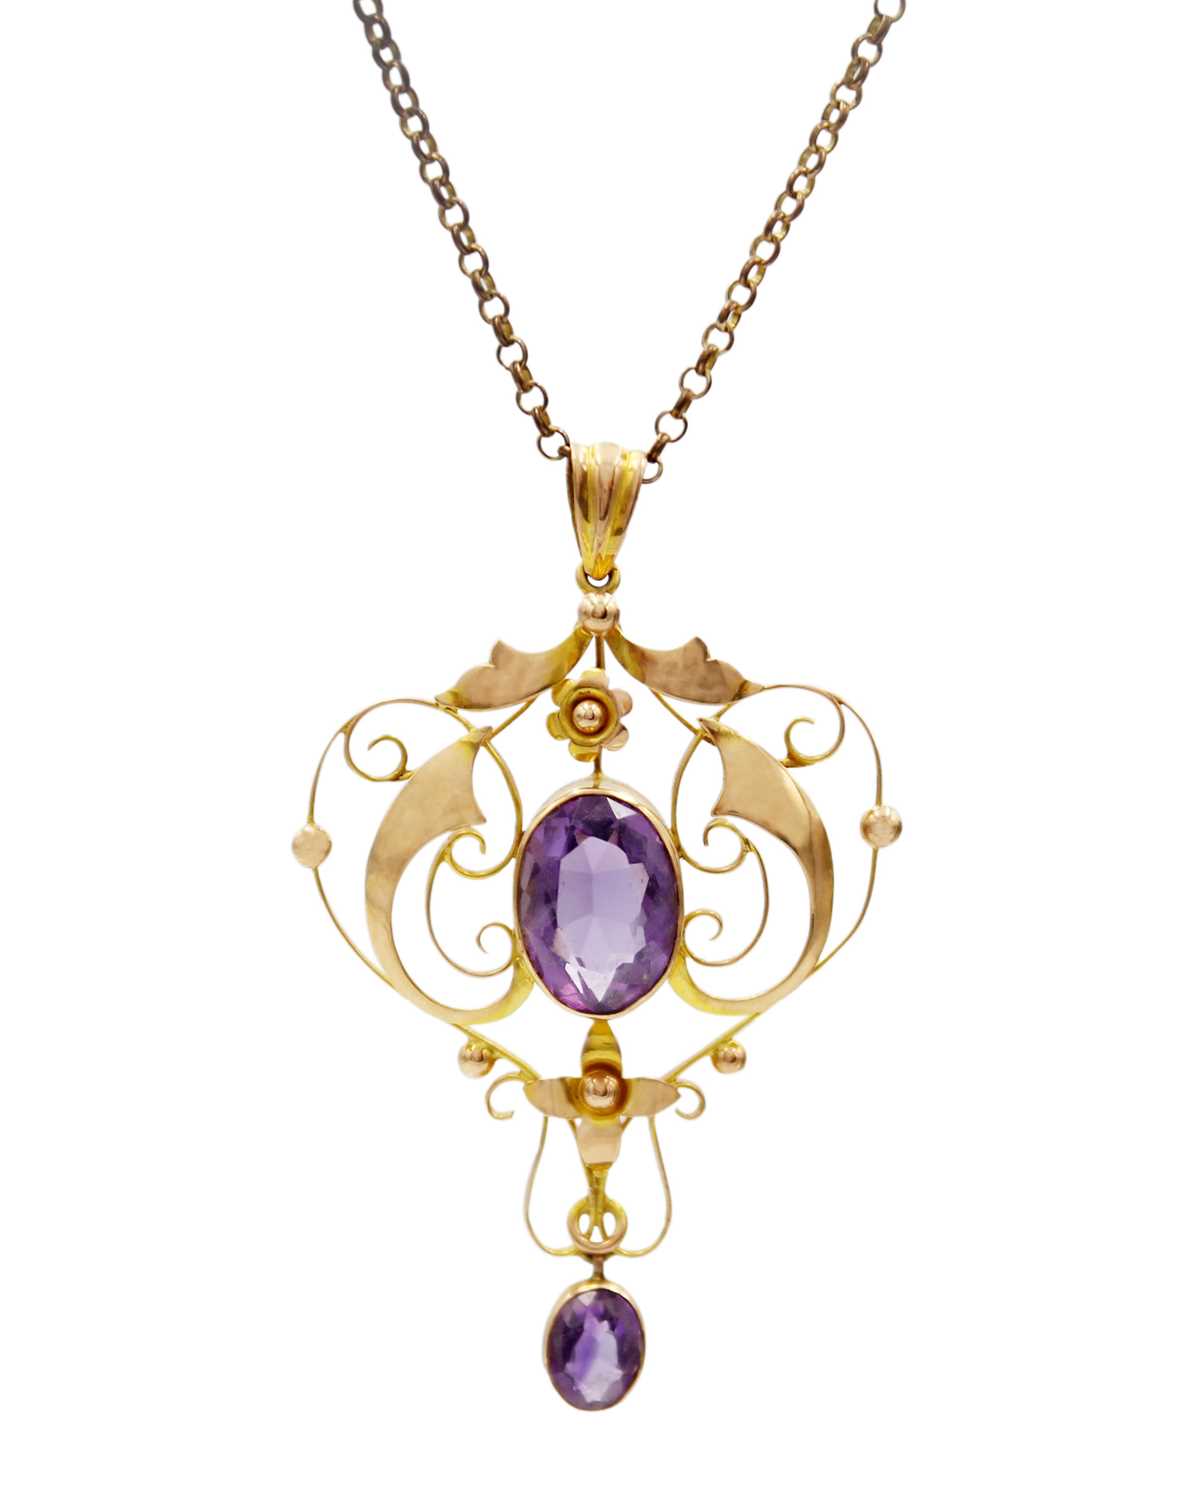 A 9ct amethyst set Art Nouveau openwork pendant on 9ct necklace.